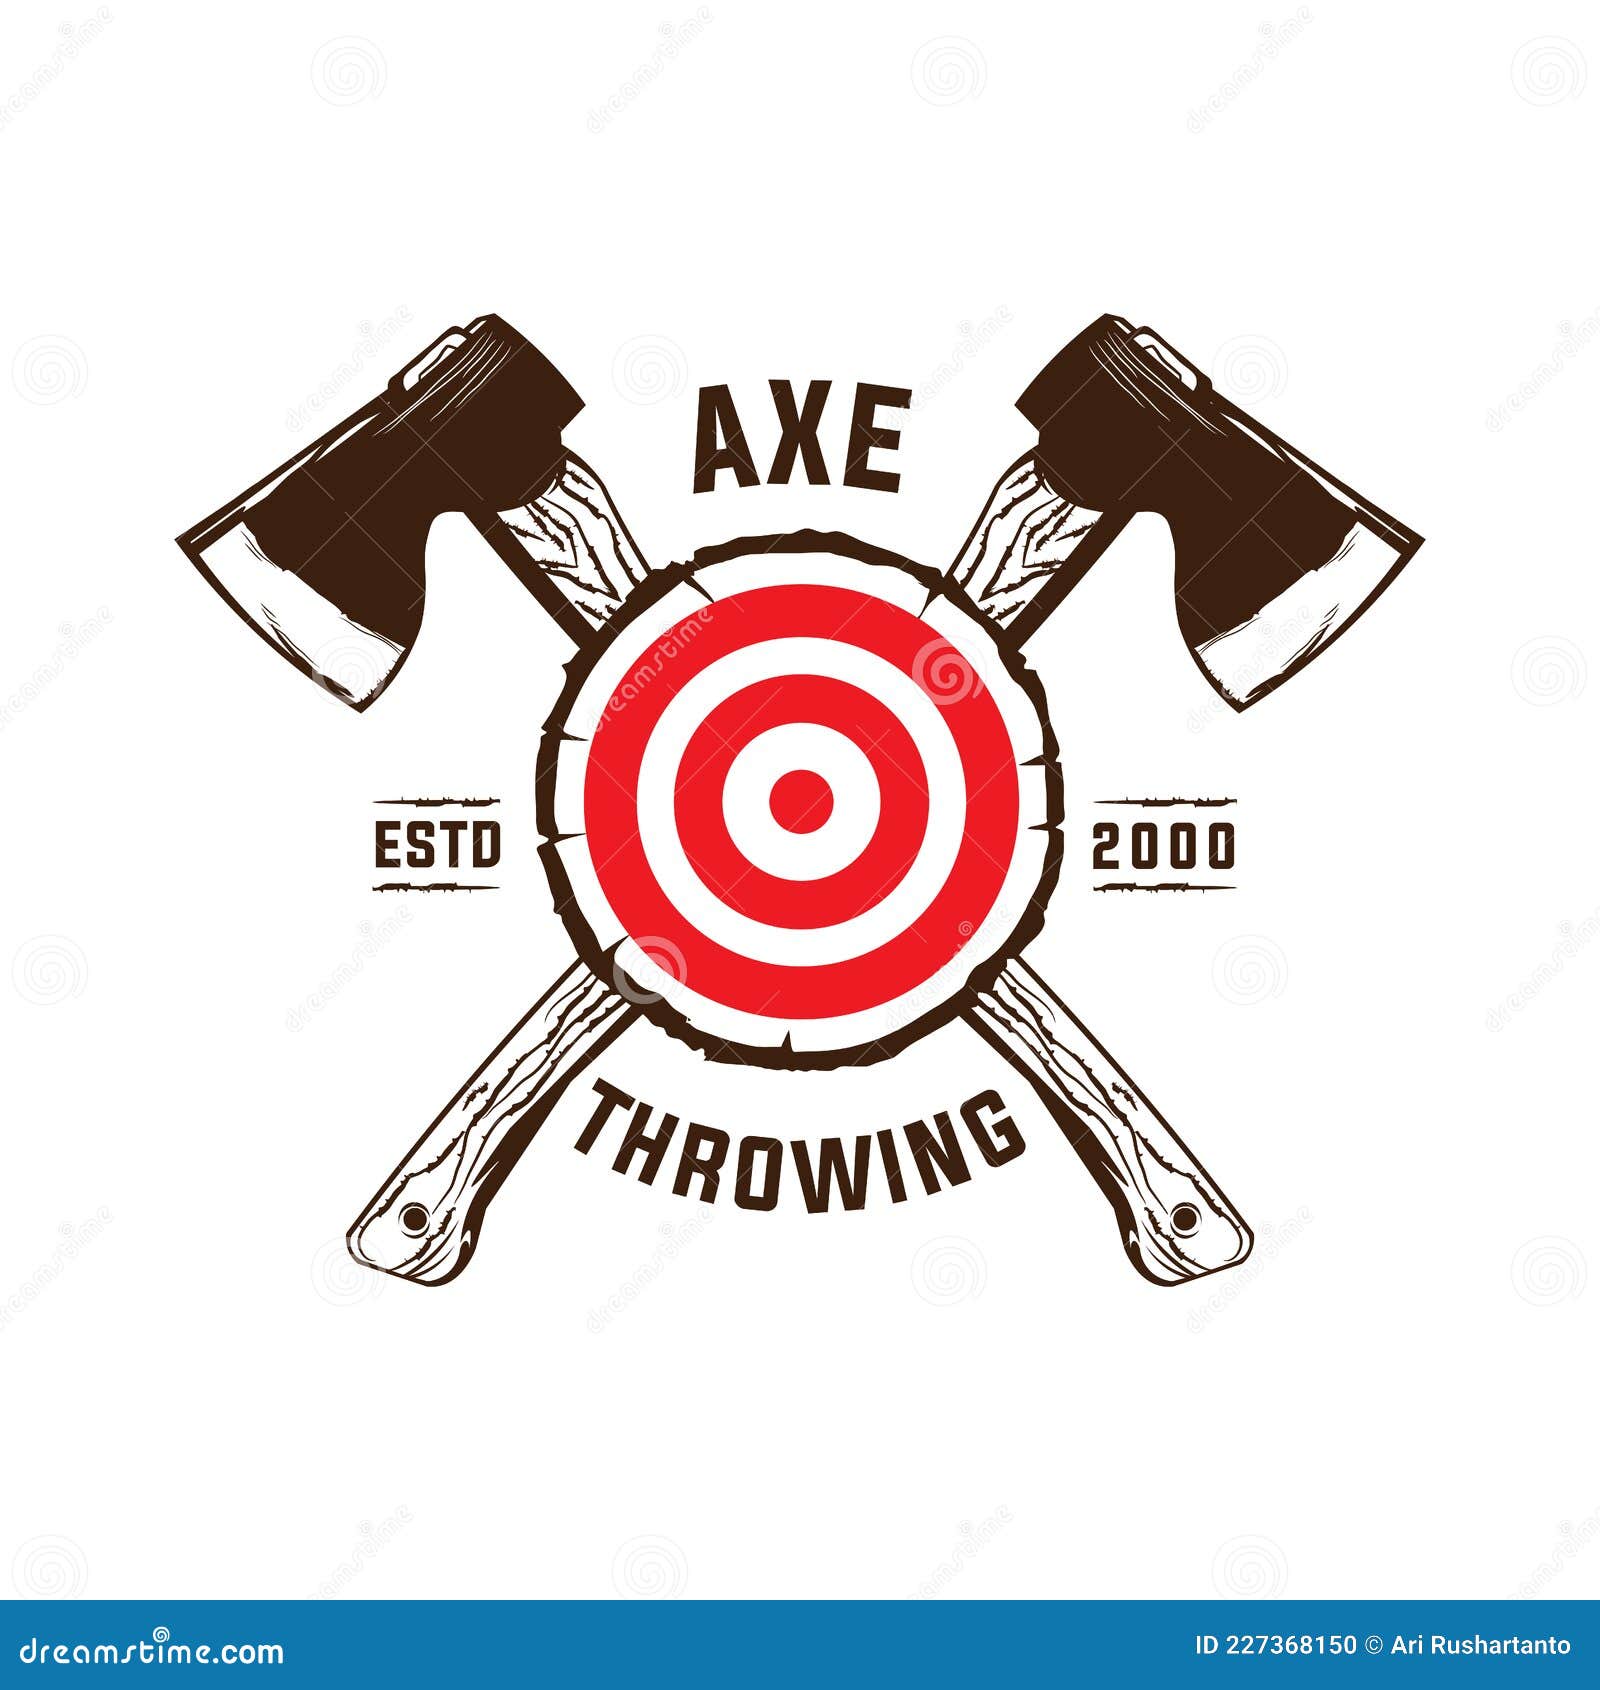 axe throwing club wood target logo 